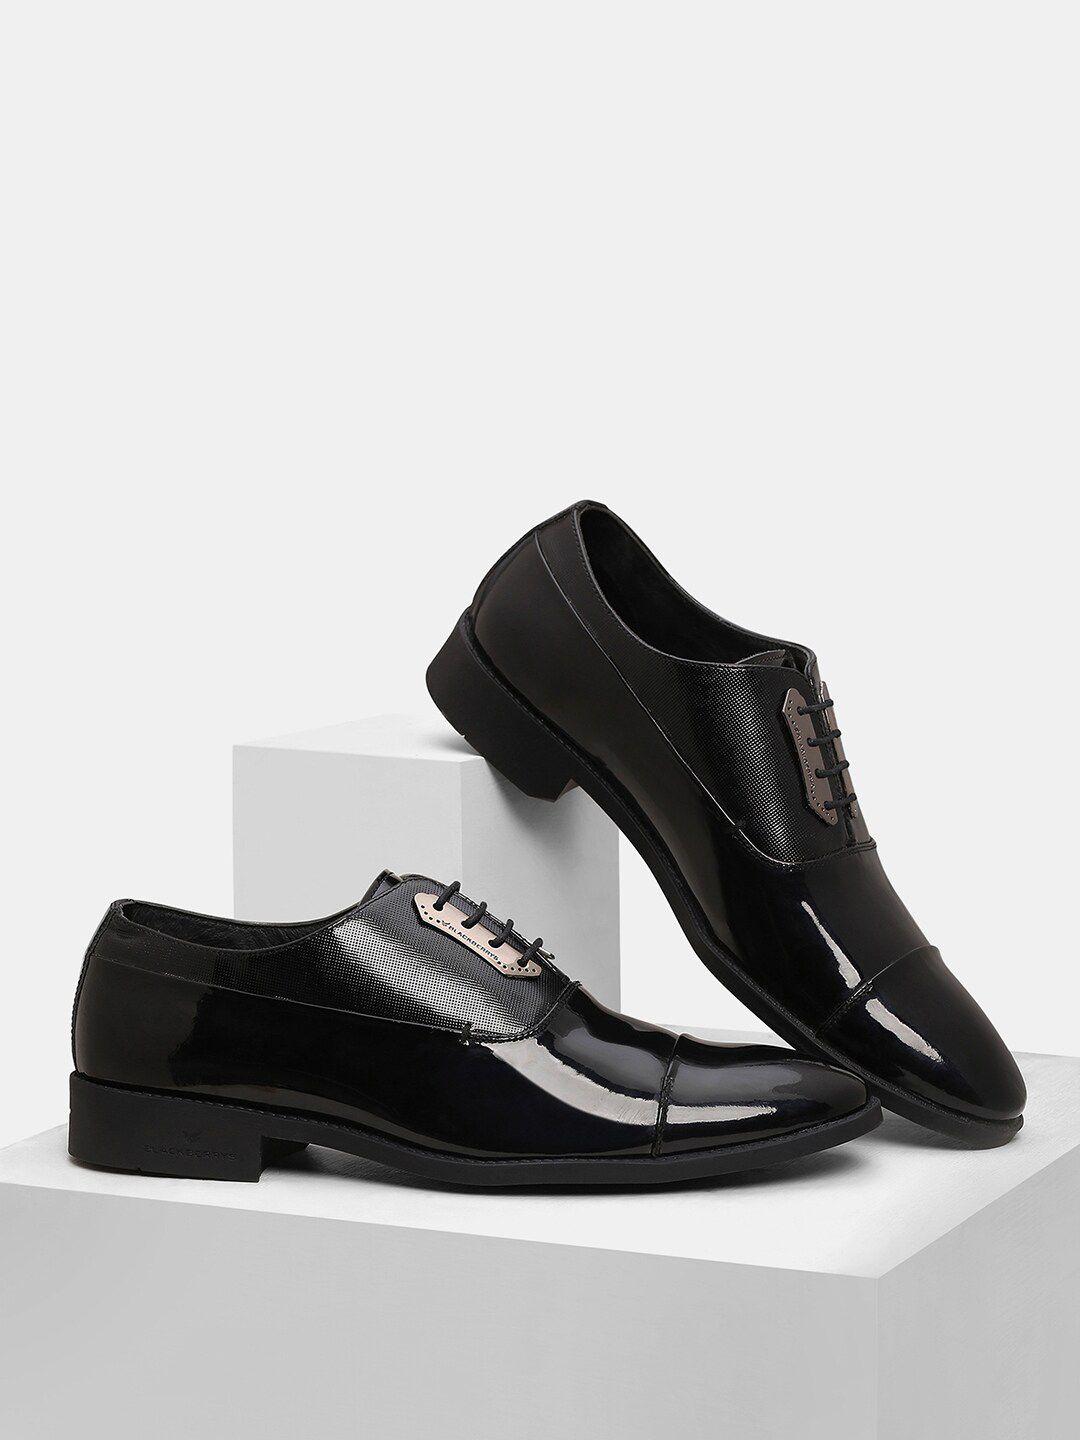 blackberrys men black solid leather oxfords formal shoes